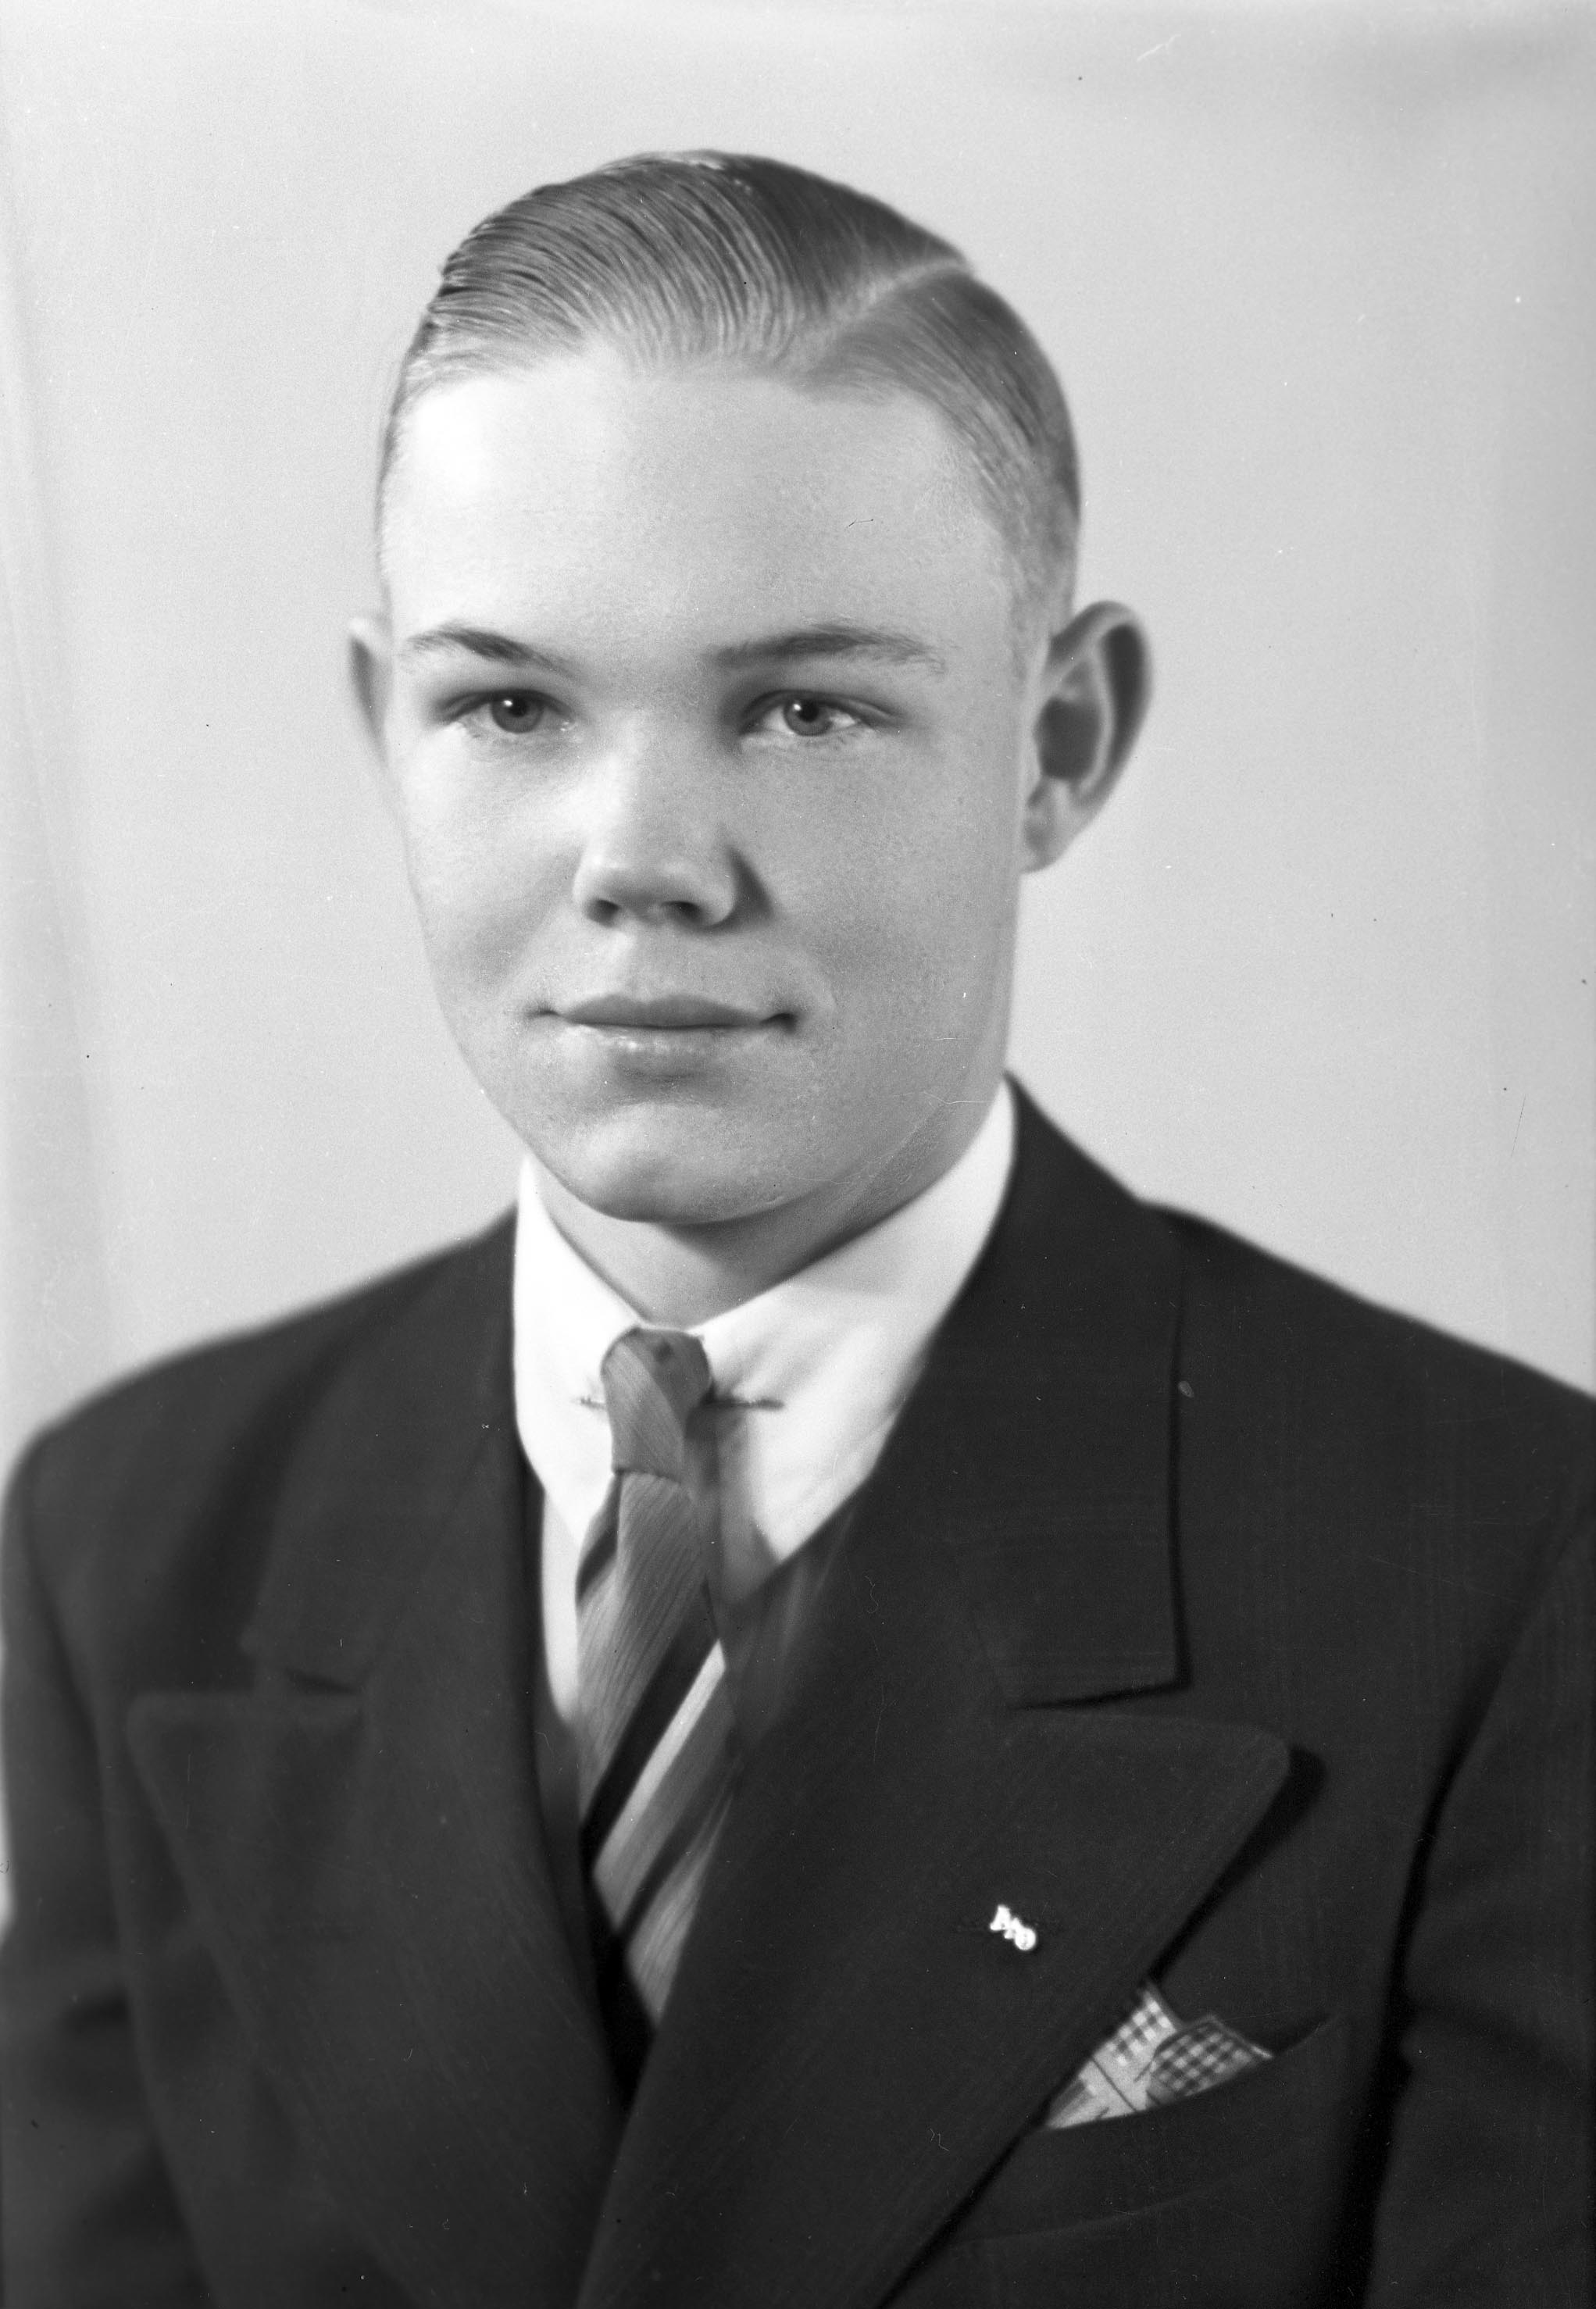 Lt. Harold B. McEndarfer